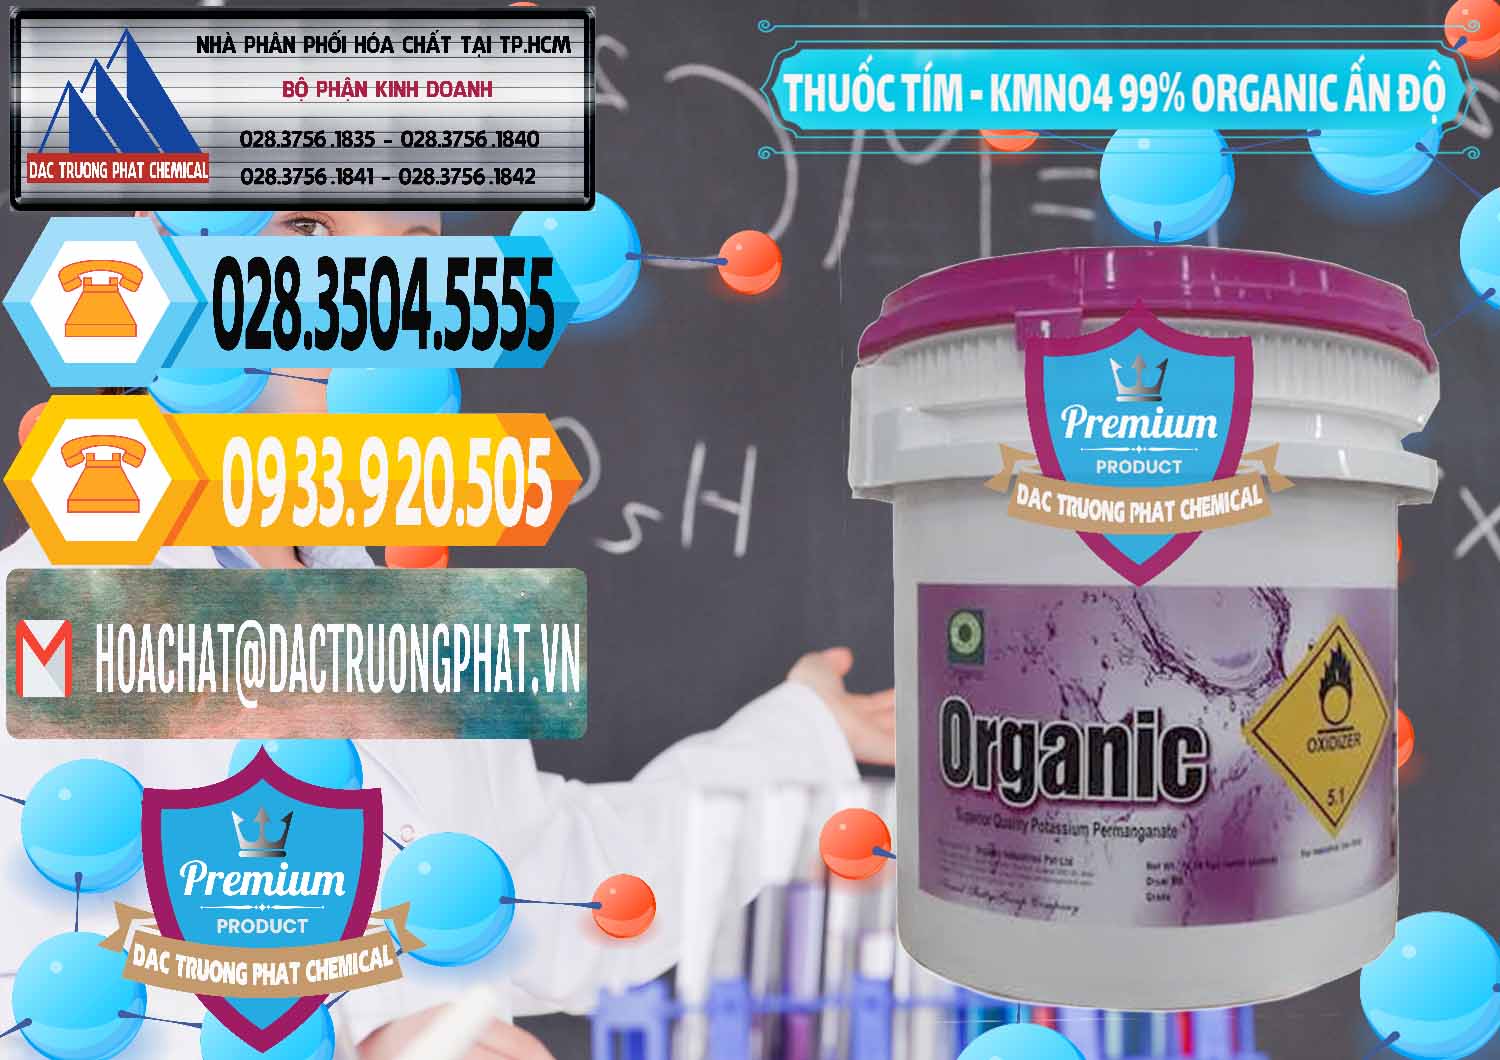 Công ty cung cấp & bán Thuốc Tím - KMNO4 99% Organic Ấn Độ India - 0216 - Nơi nhập khẩu _ cung cấp hóa chất tại TP.HCM - hoachattayrua.net